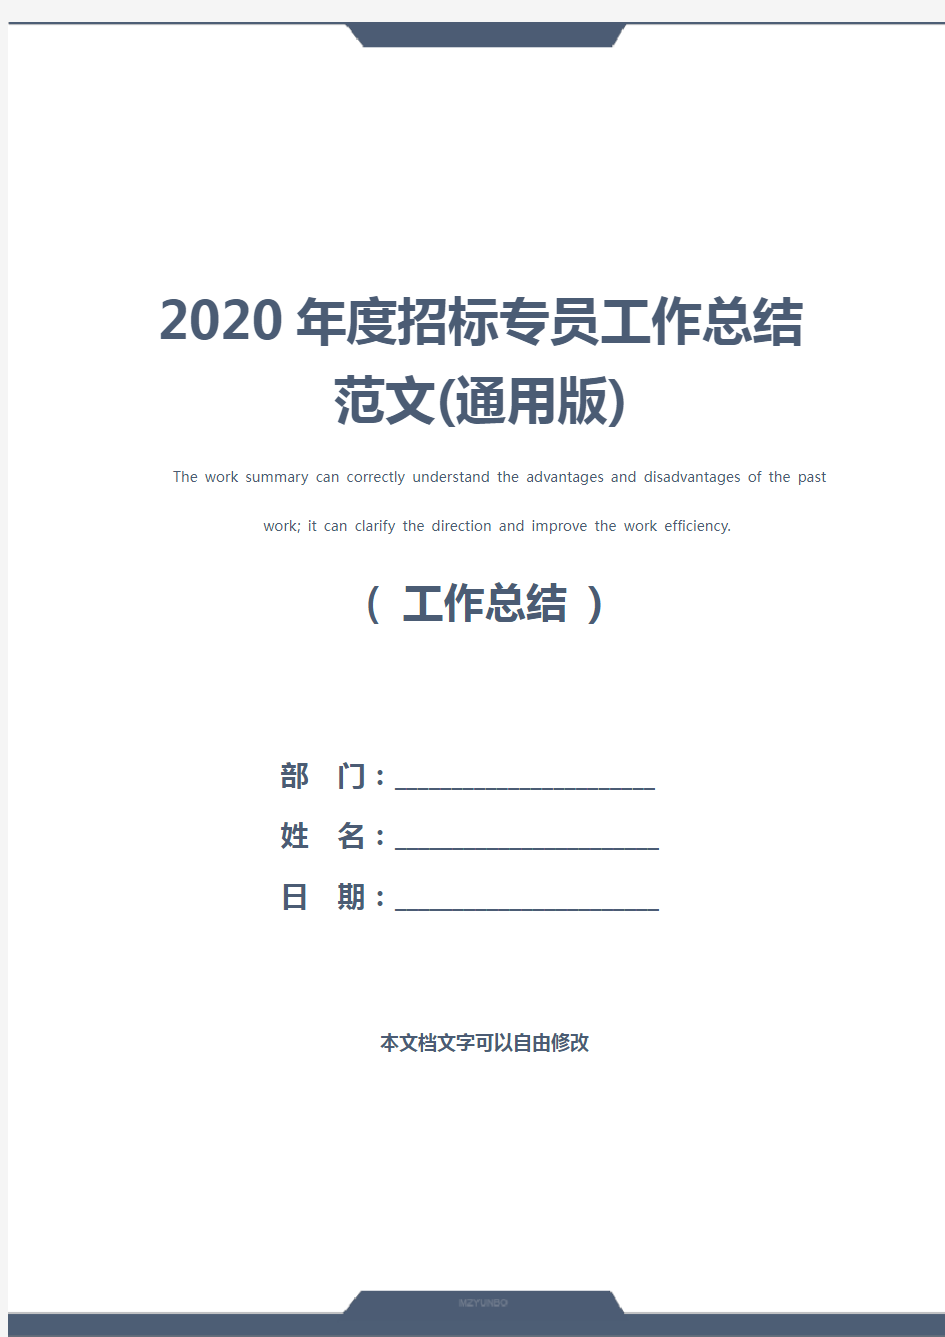 2020年度招标专员工作总结范文(通用版)